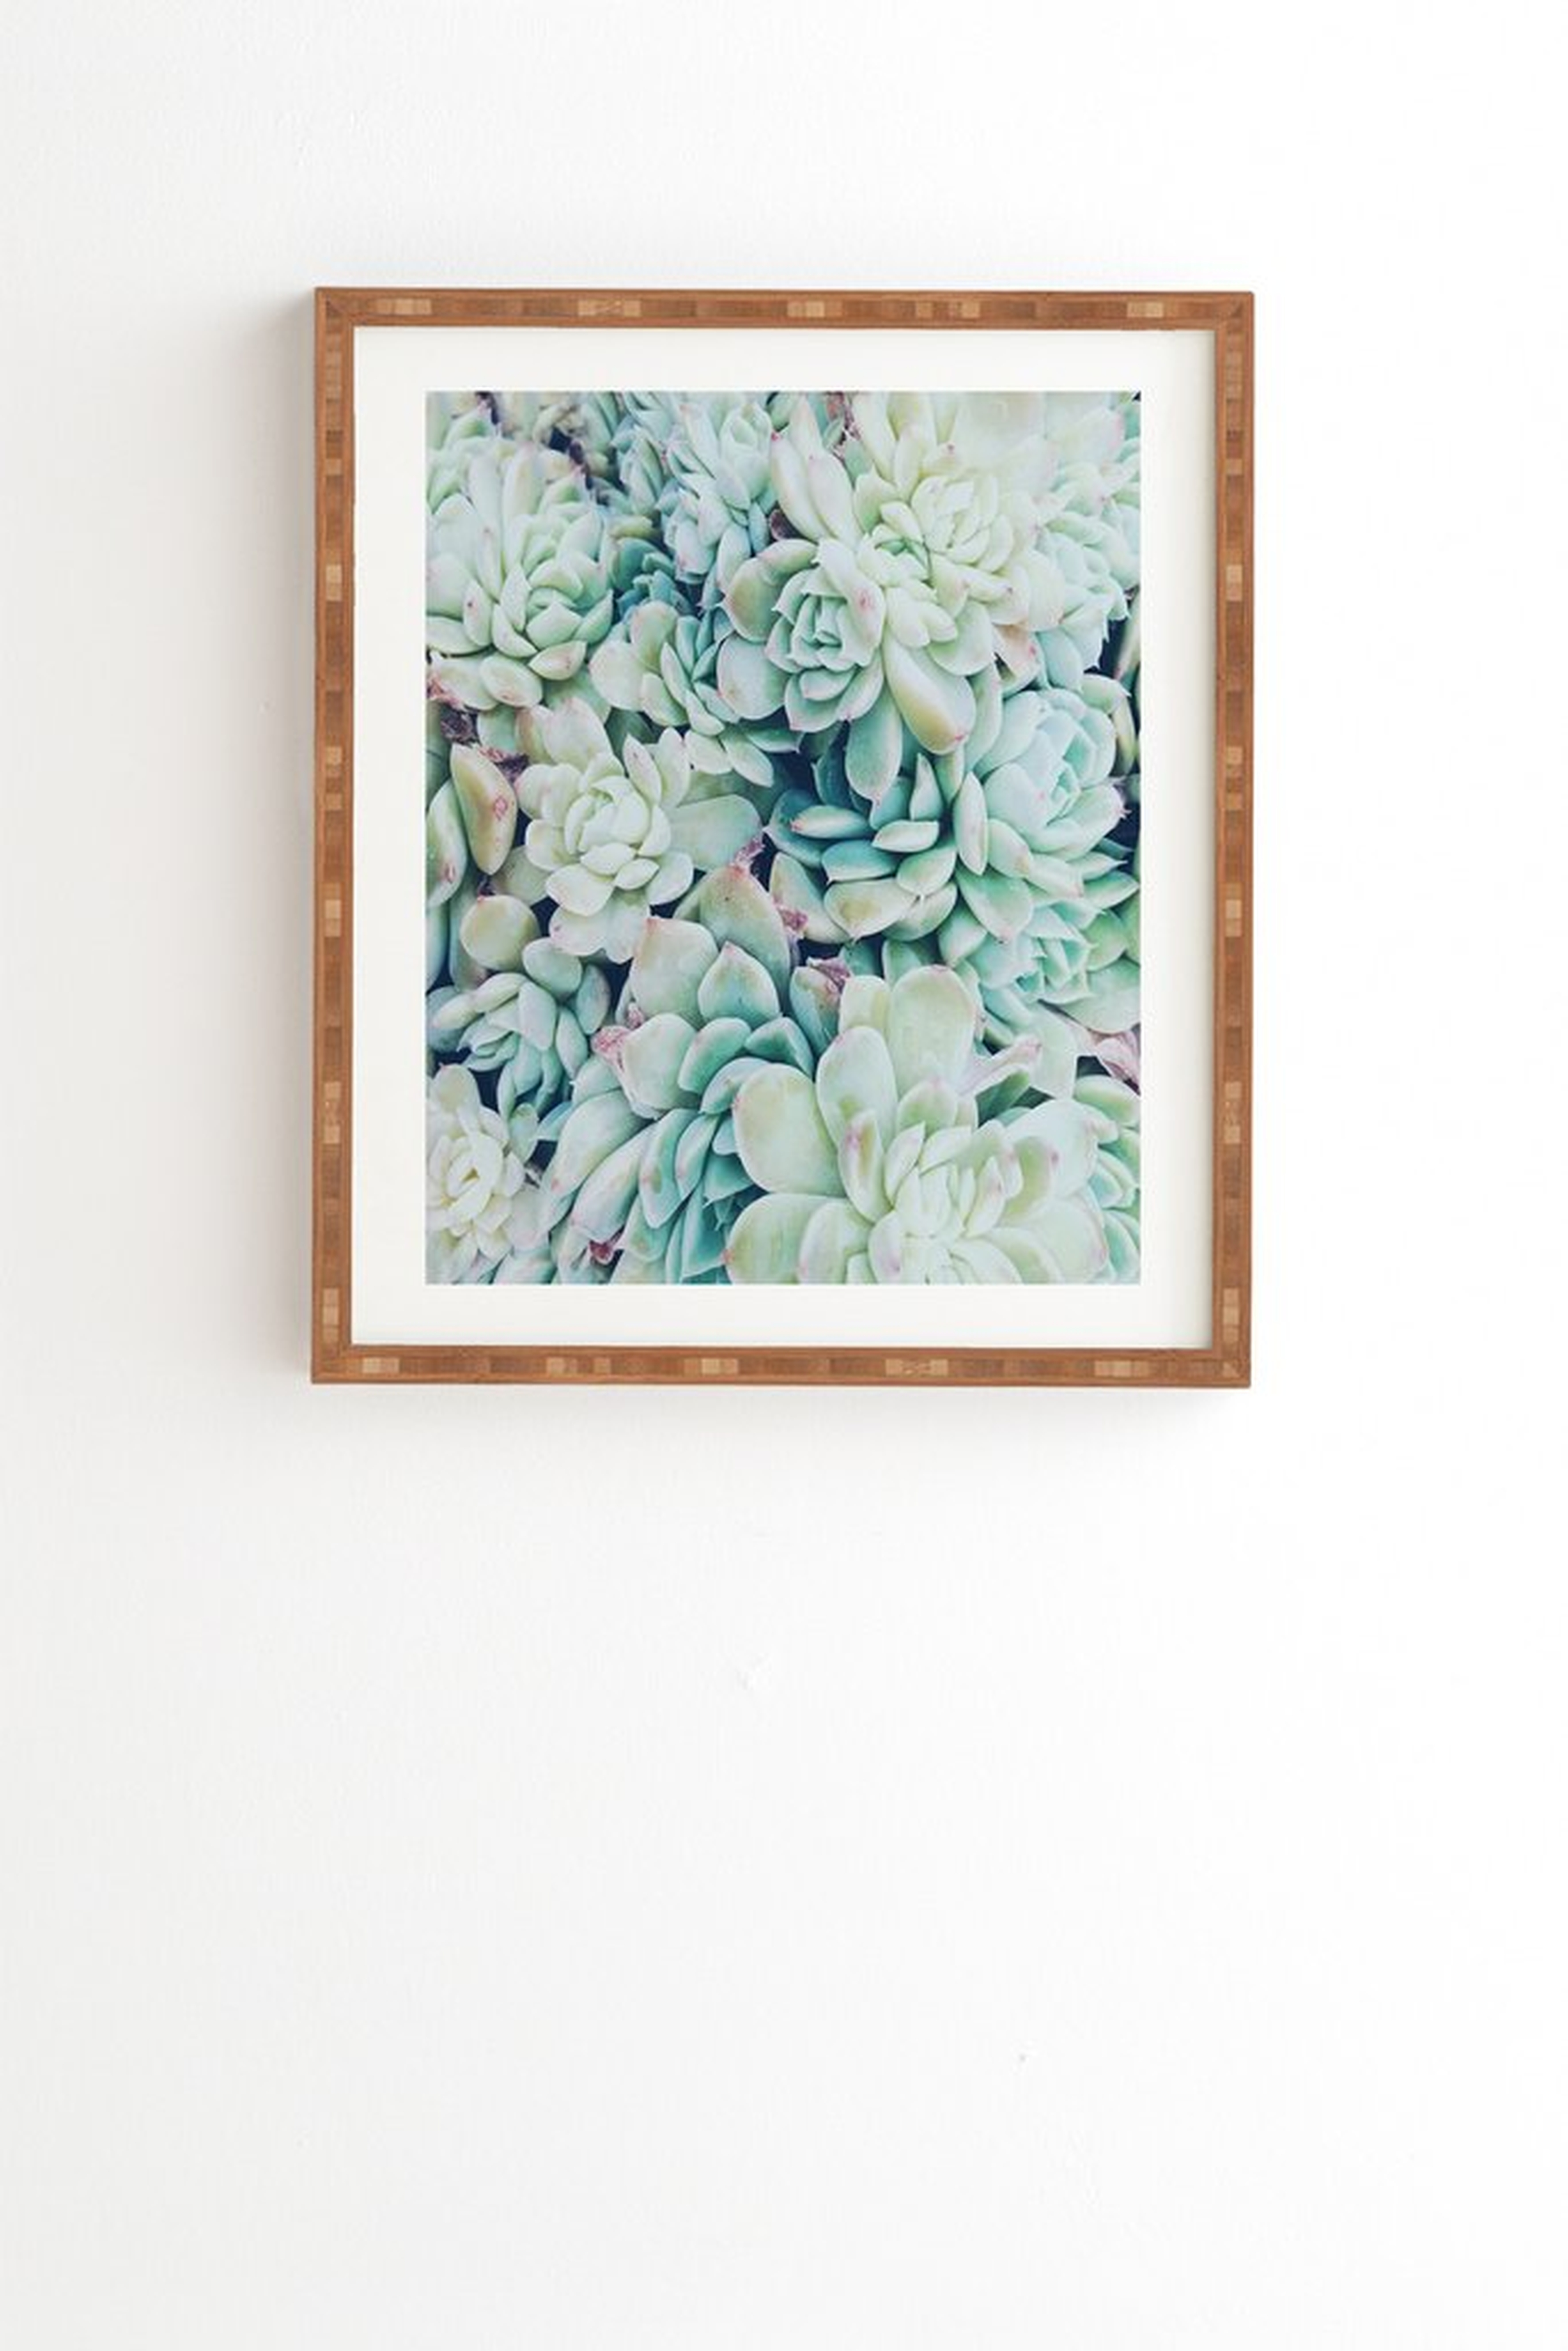 My desert blue Wall Art - 19" x 22.4" - Bamboo frame - Wander Print Co.